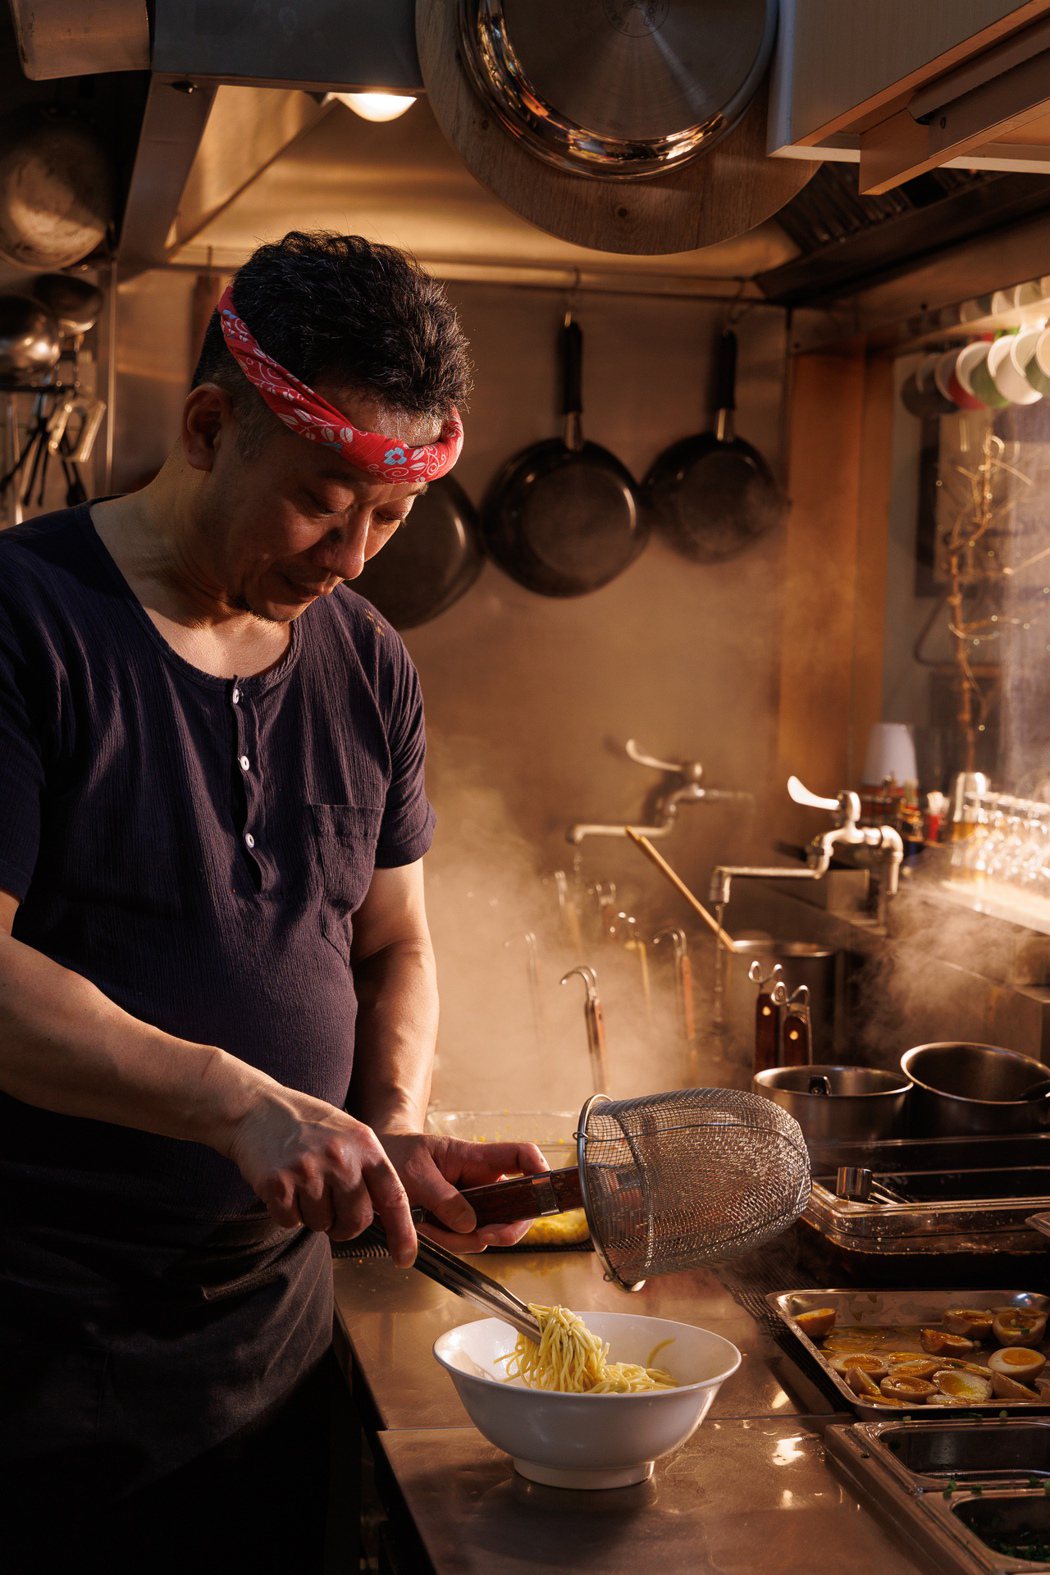 林健龍堅守職人精神，用心煮好每一碗拉麵，堅持傳統熬製的湯頭，是六丁目拉麵的靈魂。...